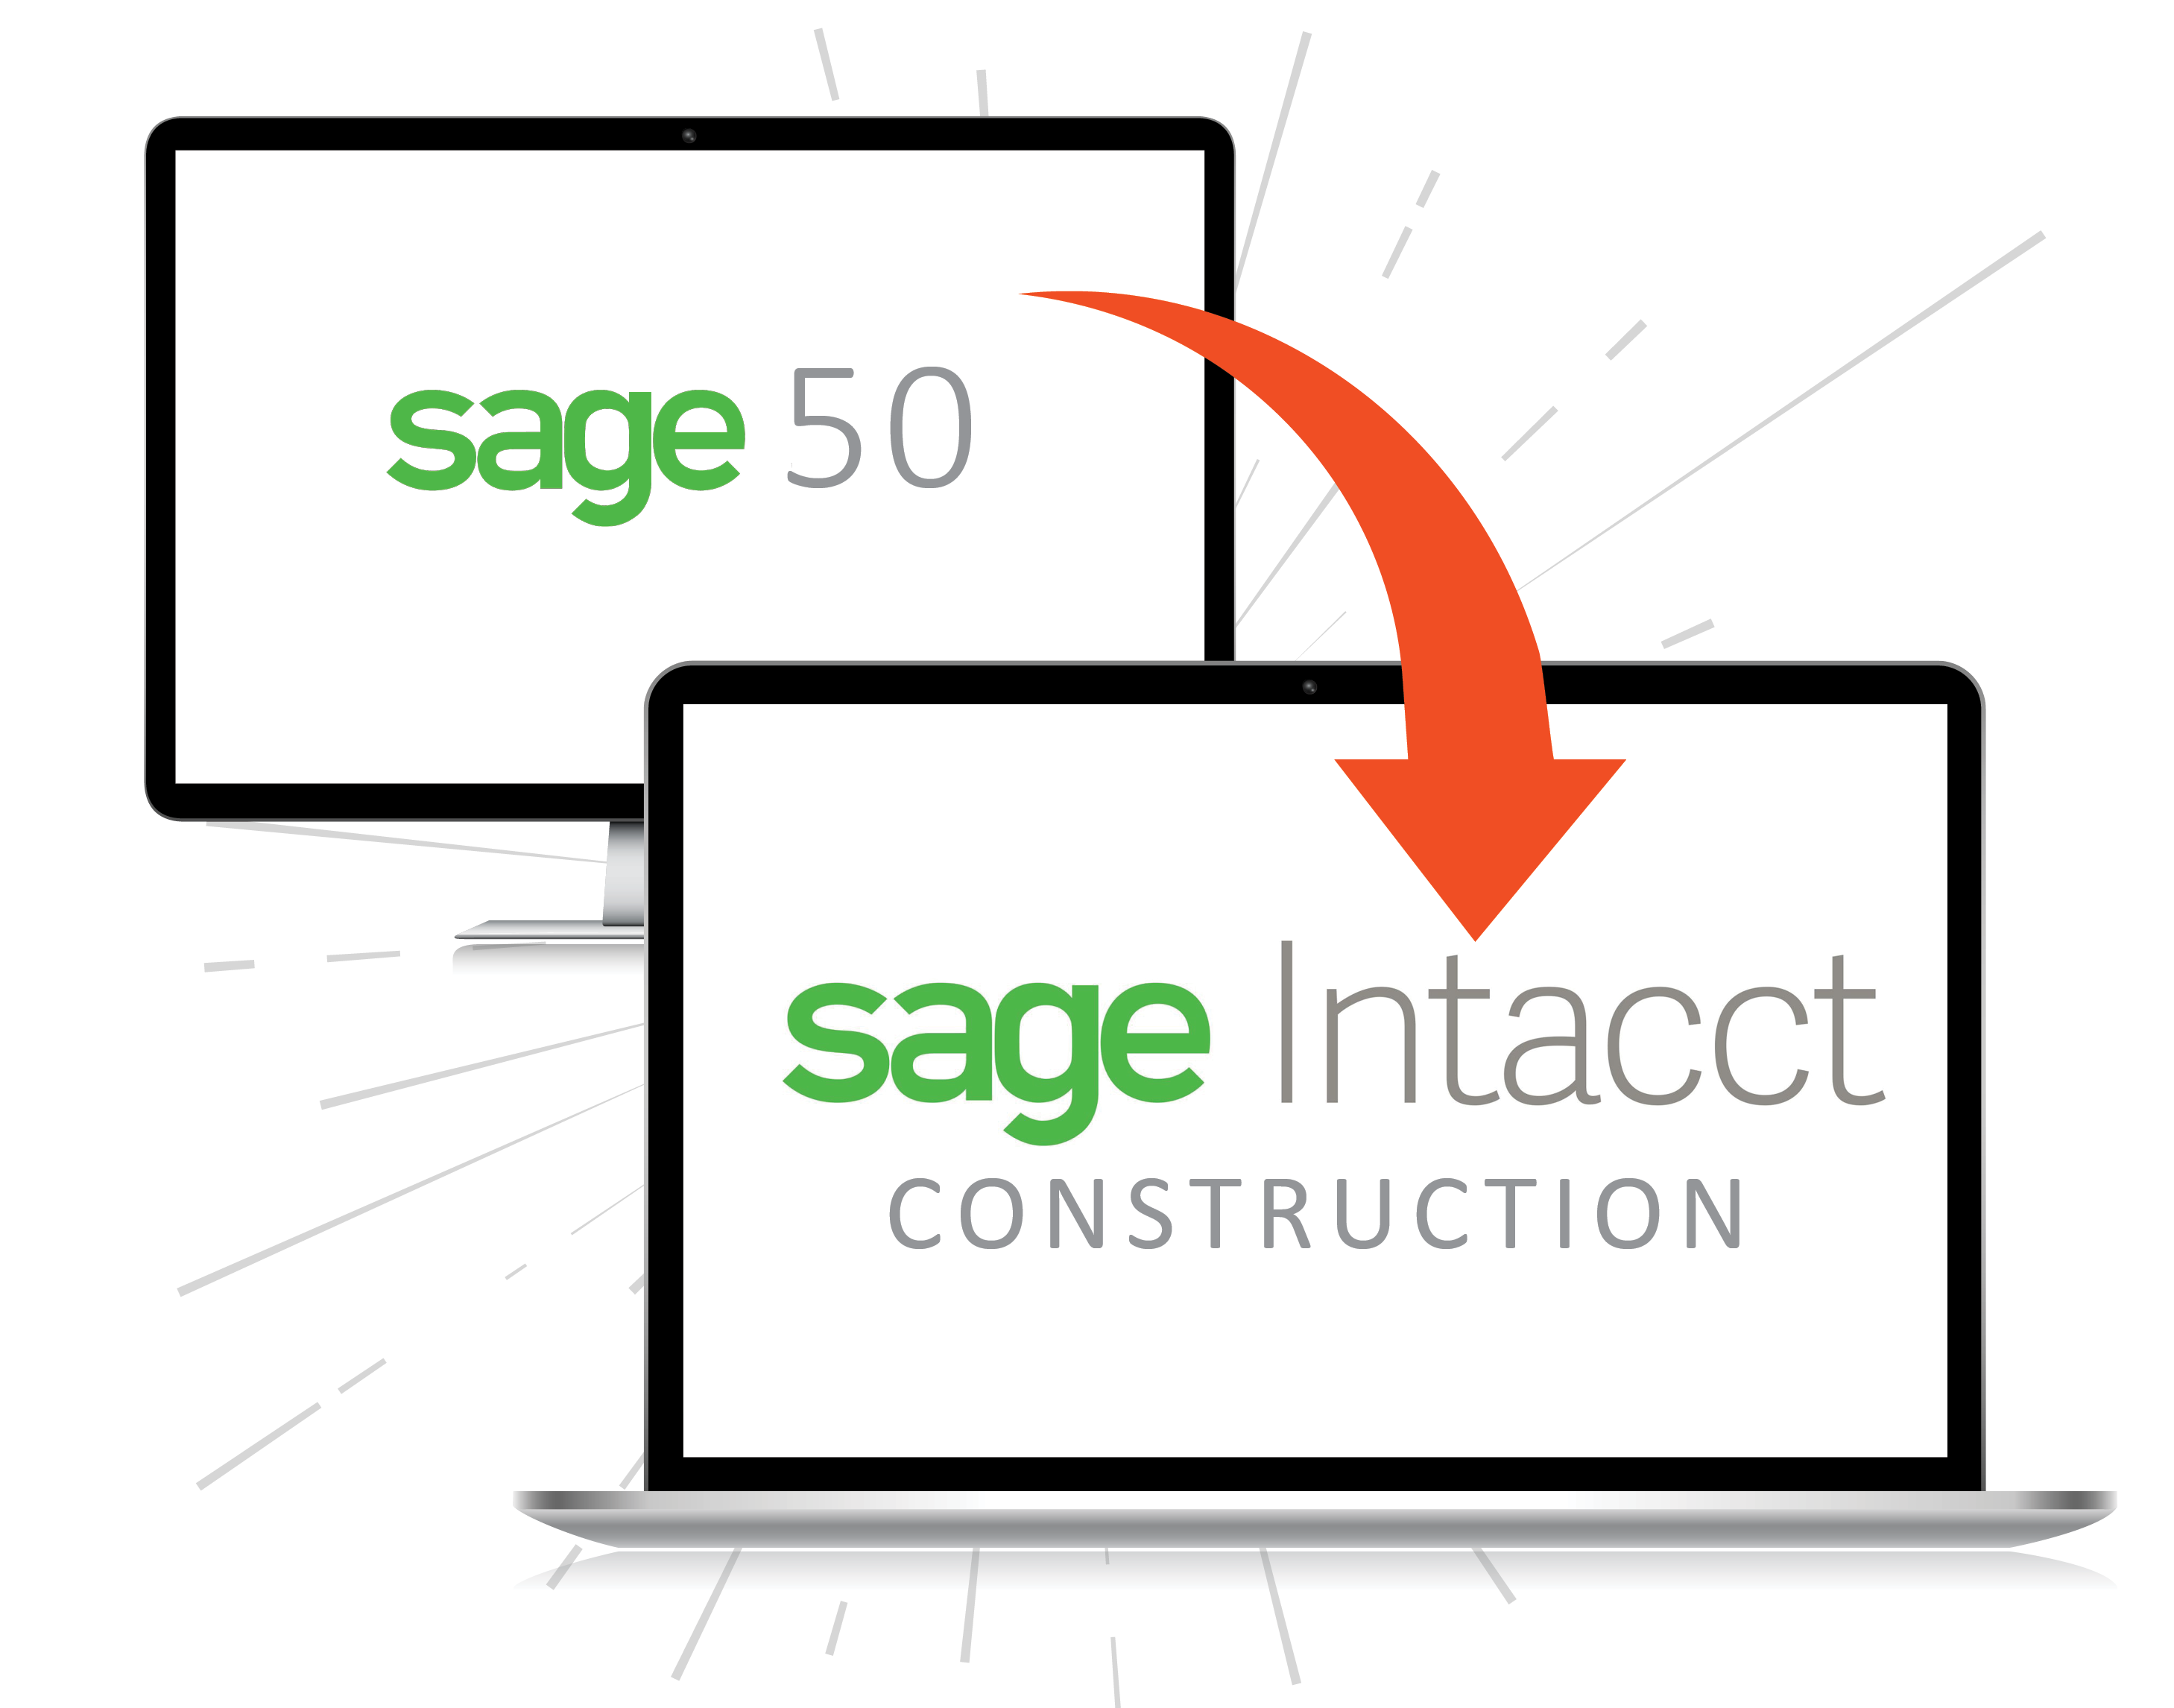 Sage 50 to Sage Intacct